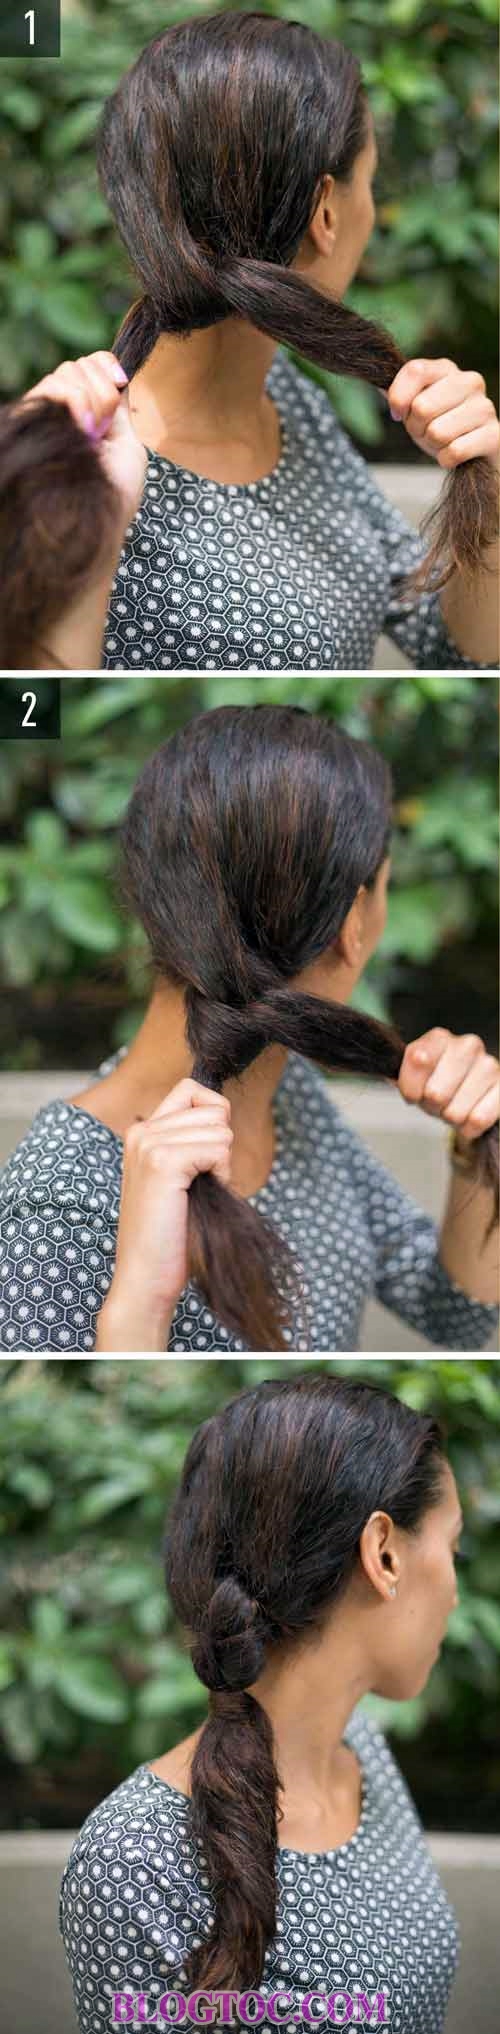 Những kiểu tóc đẹp đơn giản bạn có thể làm tại nhà chỉ với chút thời gian rảnh 6